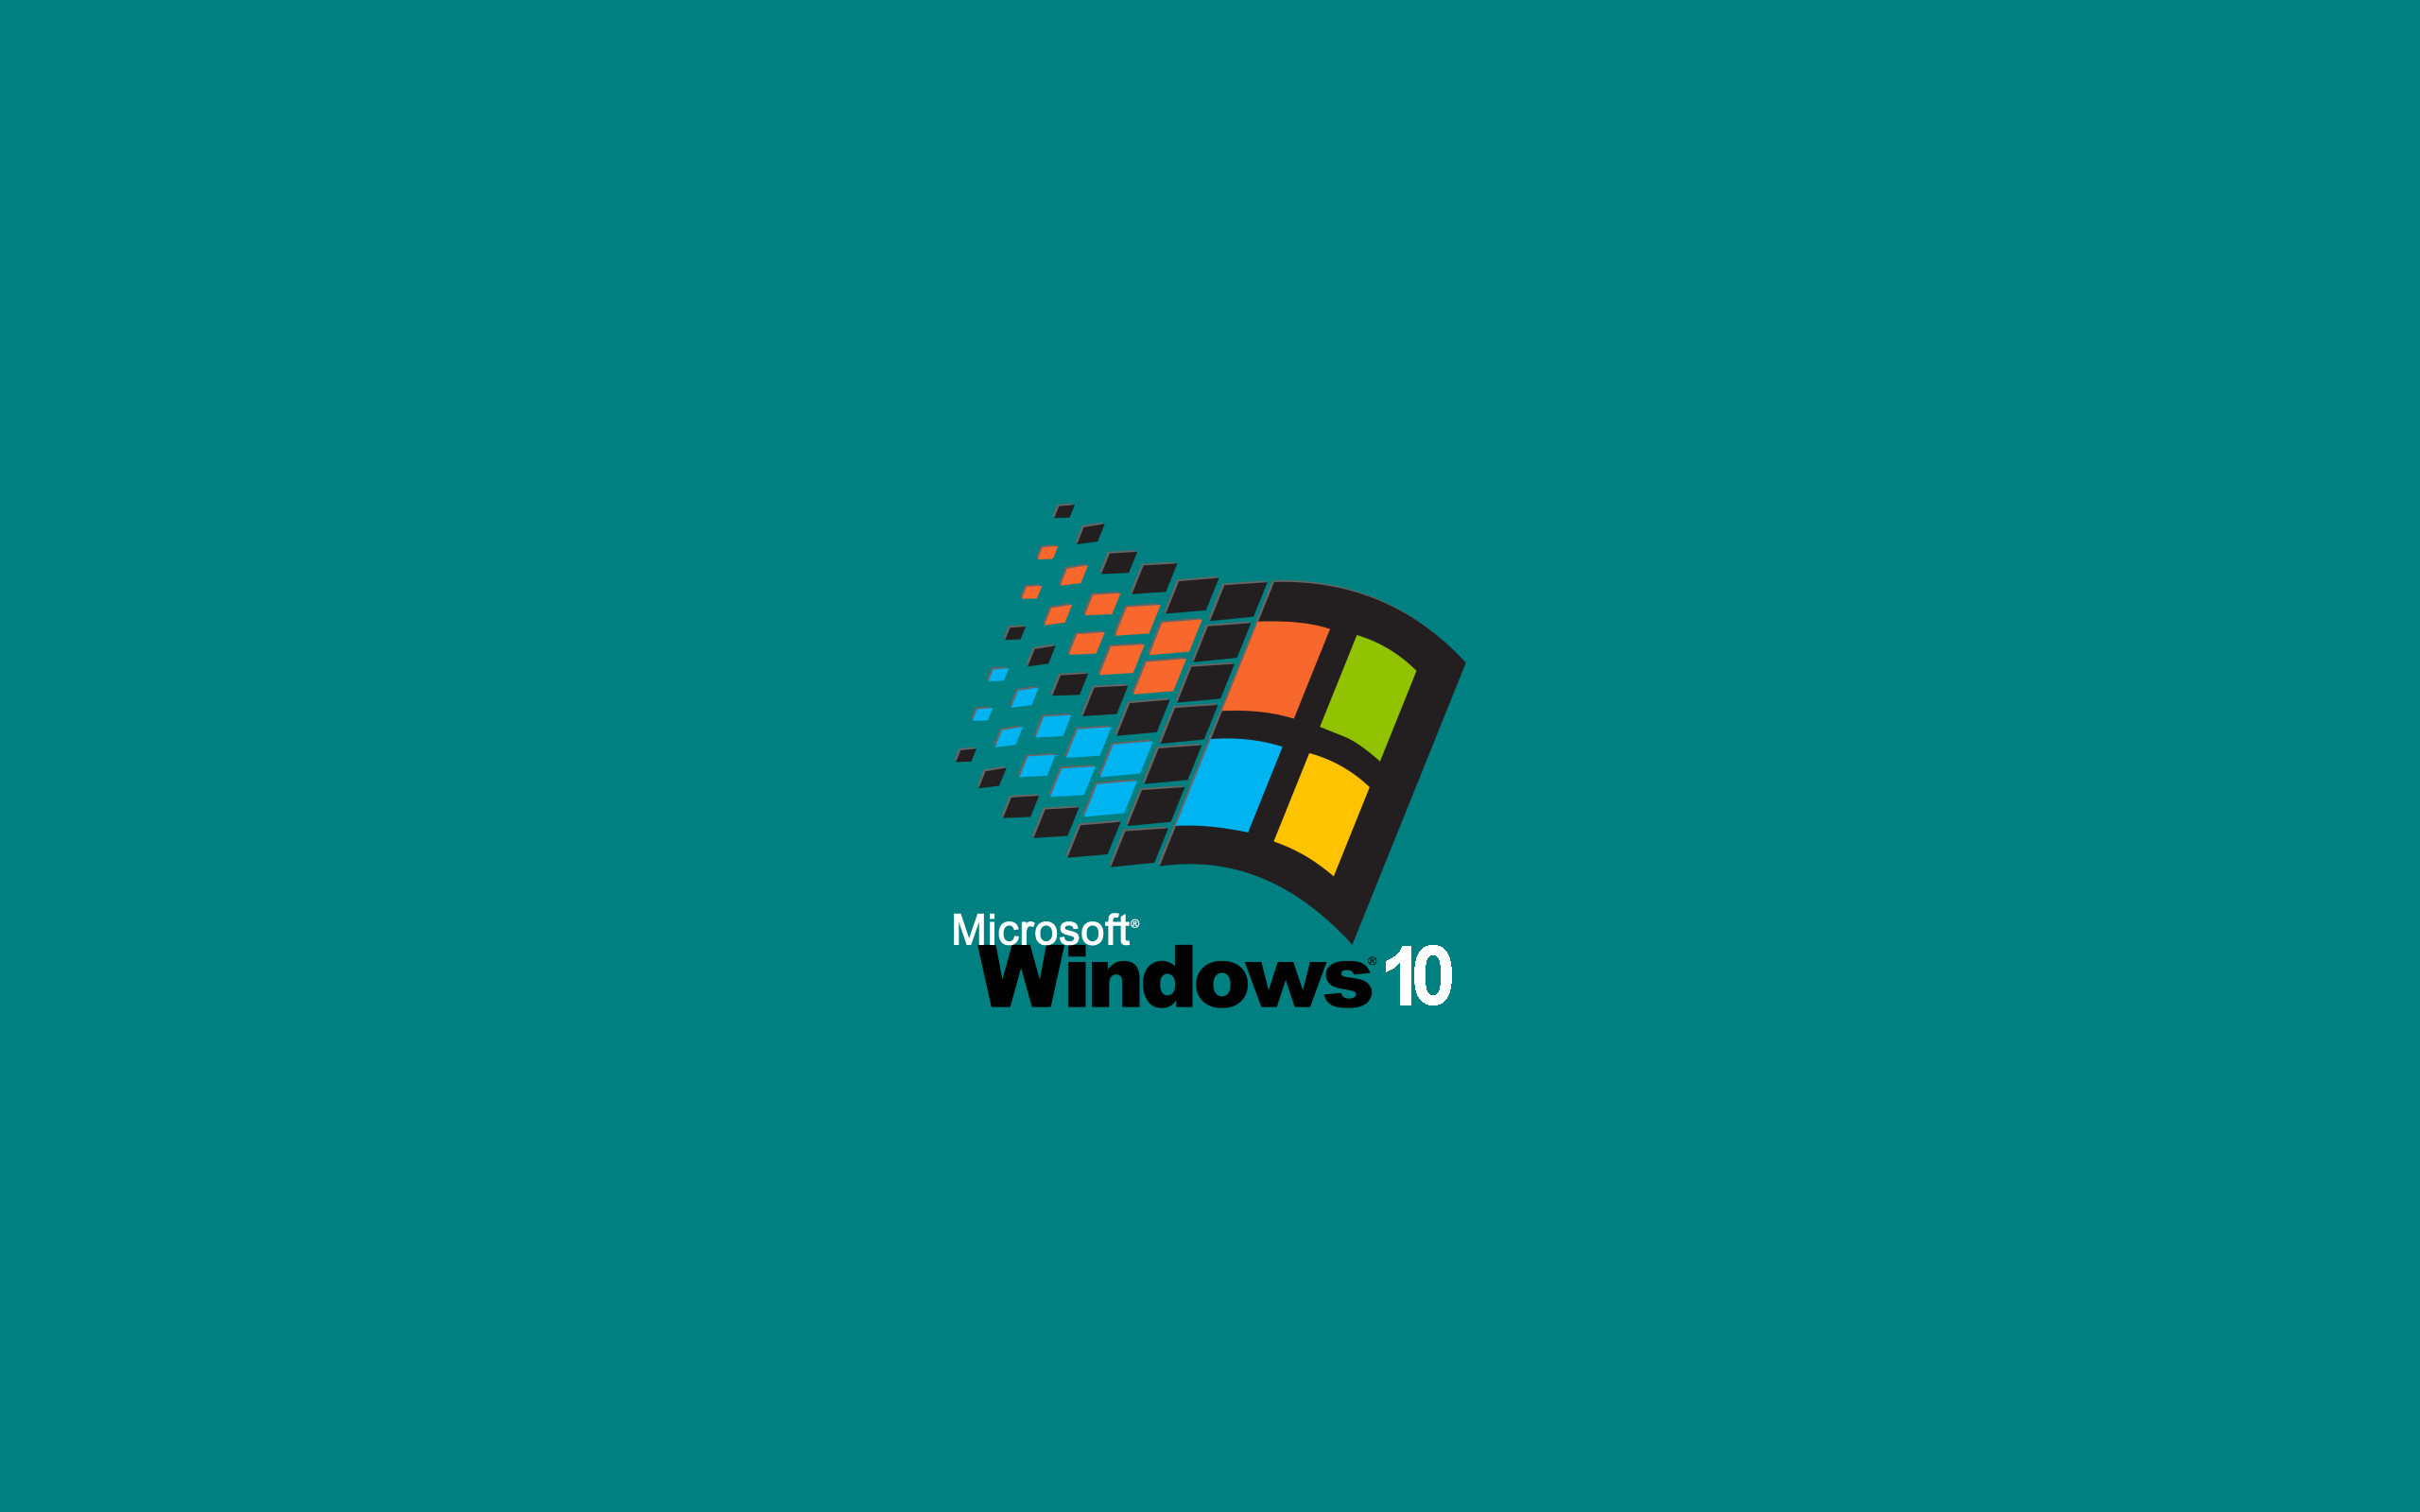 Bộ sưu tập Hình nền cũ của Windows mang lại cho bạn những cảm giác thực sự retro và hoài niệm. Với các hình ảnh của những phiên bản Windows cũ như Windows 95, Windows XP và Windows 98, bạn sẽ có được một chuyến đi trở lại thời gian đầy thú vị.